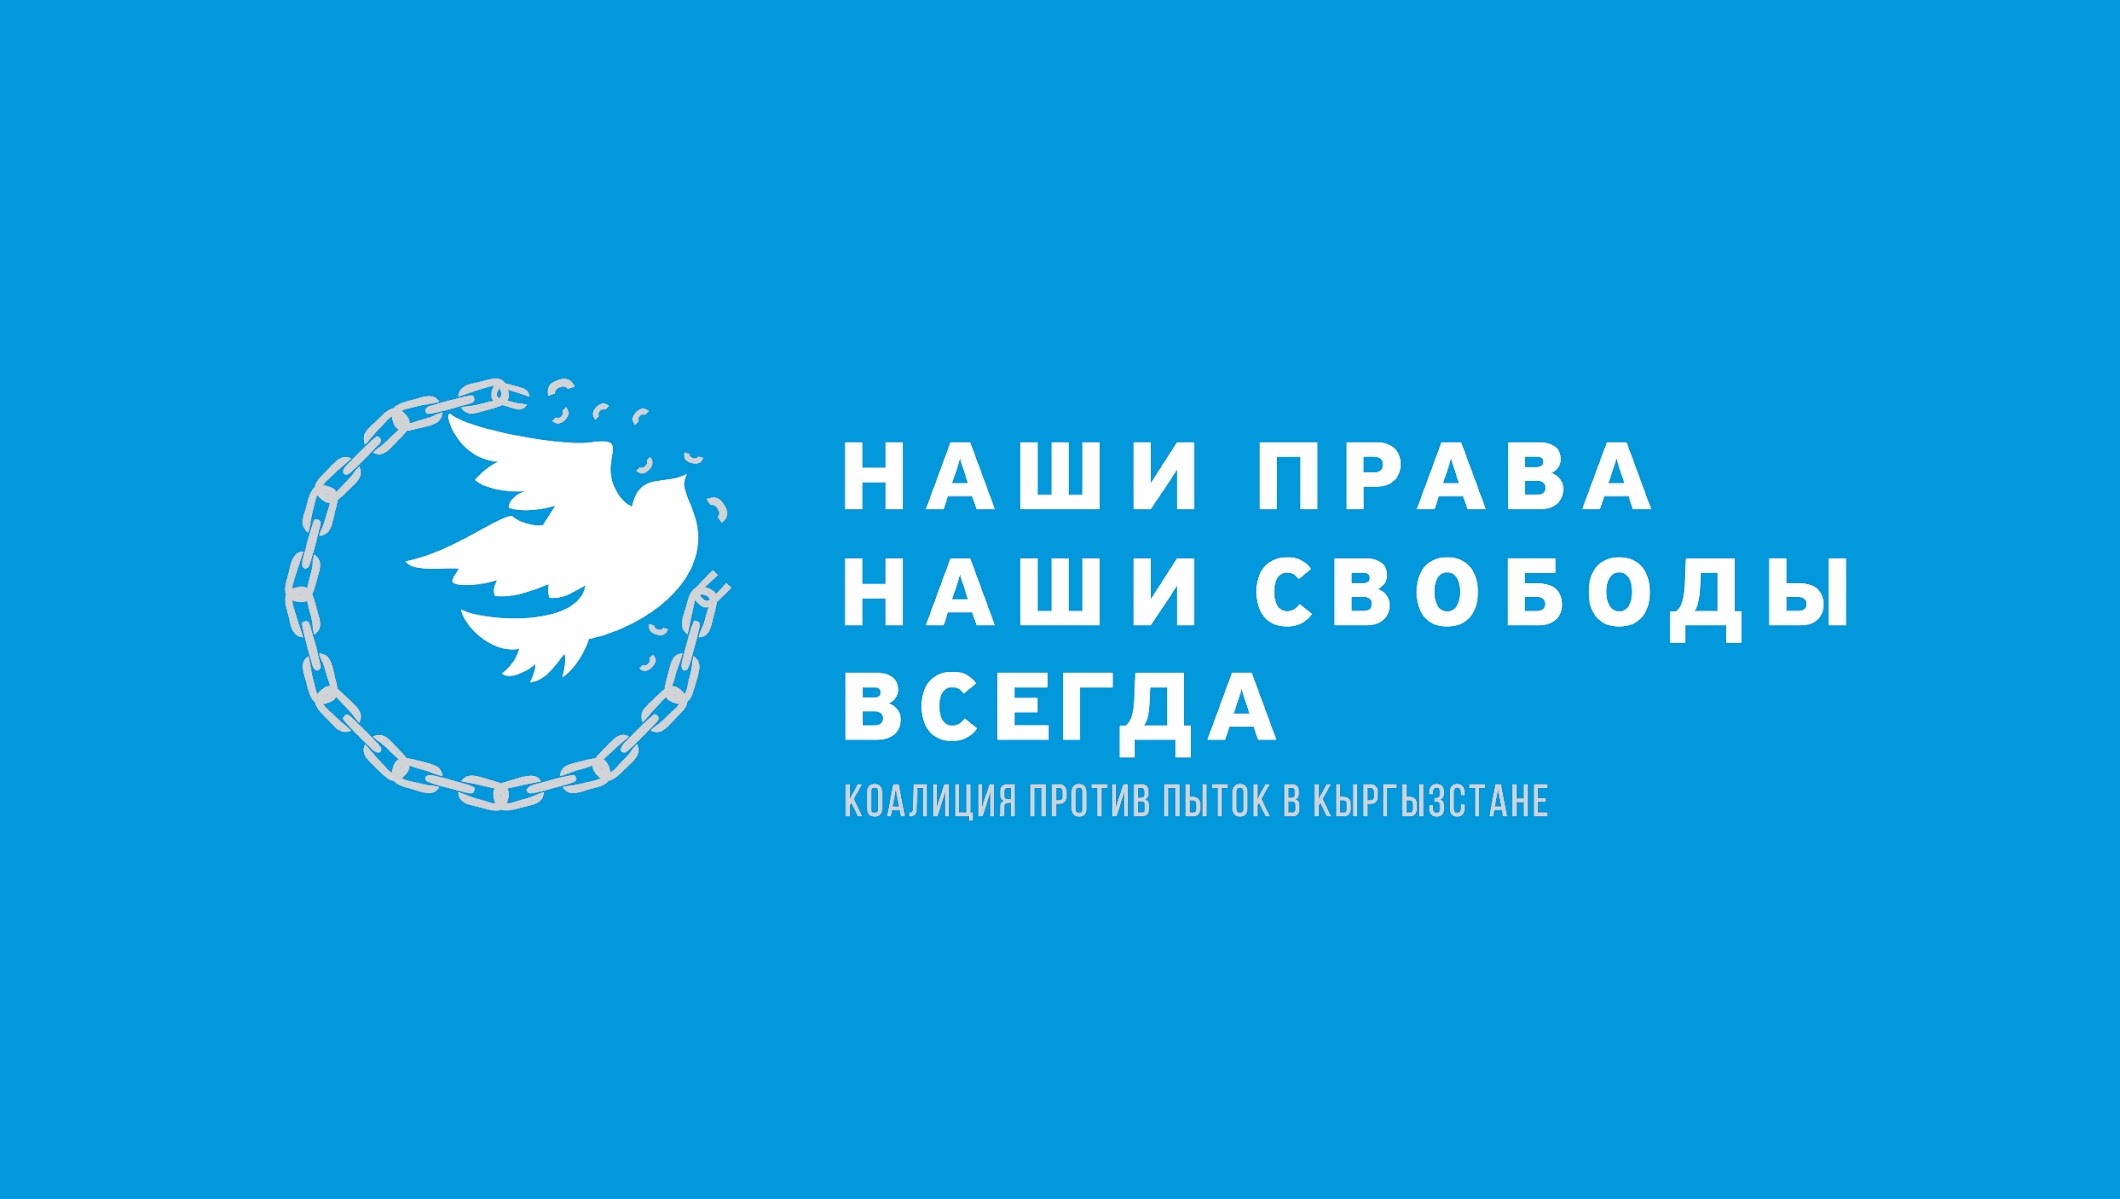 Конвенция о пытках. Коалиция против пыток в Кыргызстане. Конвенция против пыток. Конвенция ООН против пыток. КИРТАГ кыргызское телеграфное агентство логотип.